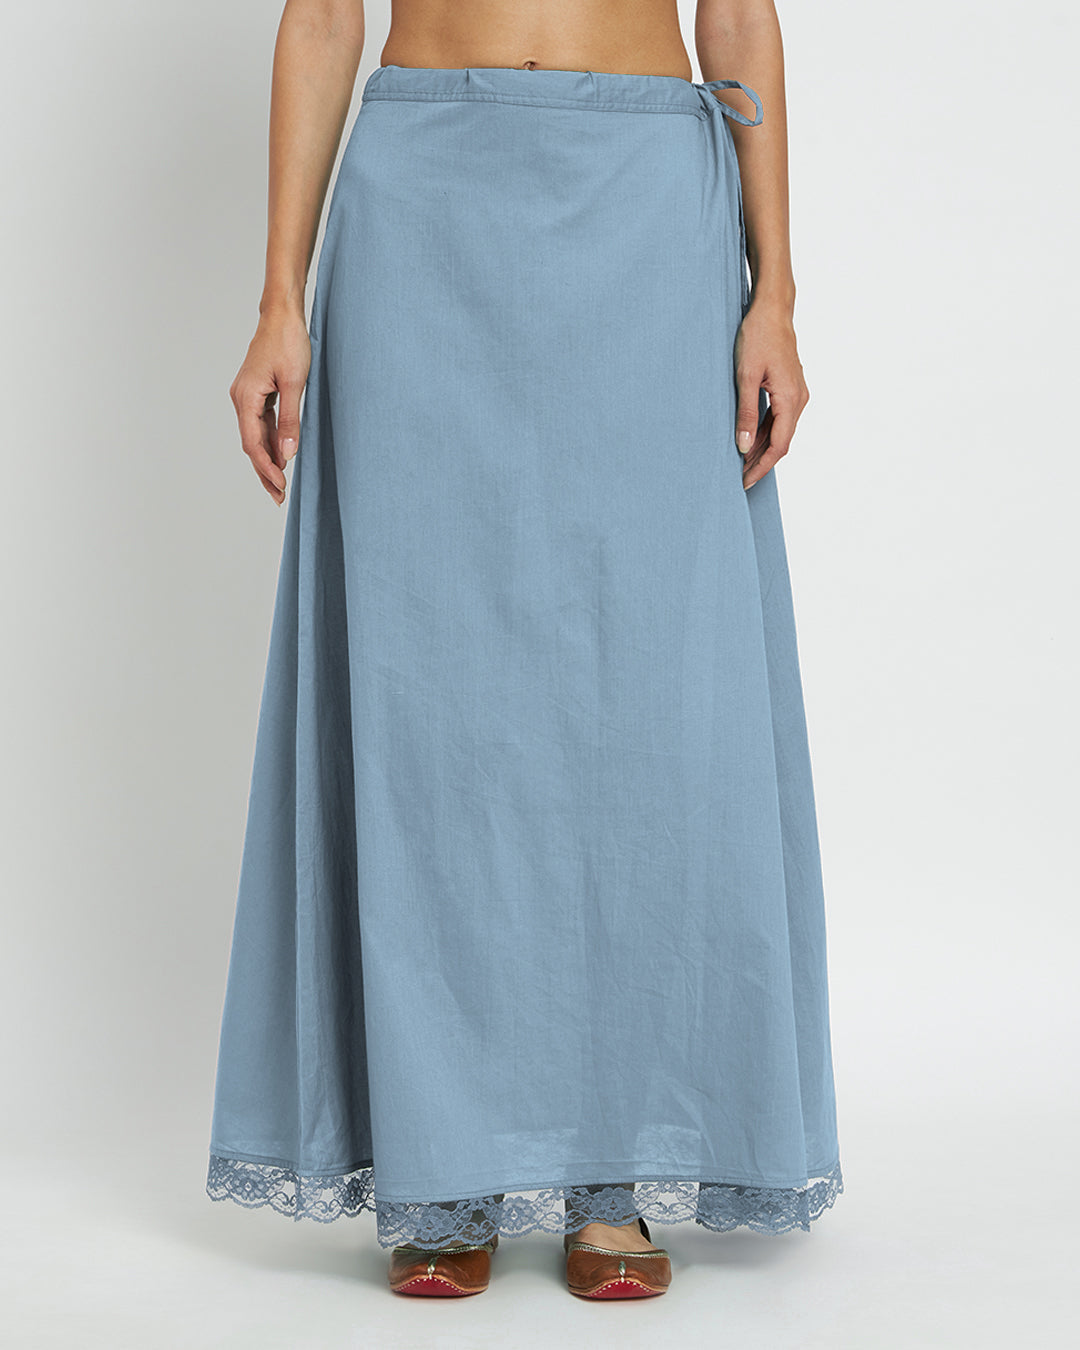 Blue Dawn Lace Medley Peekaboo Petticoat